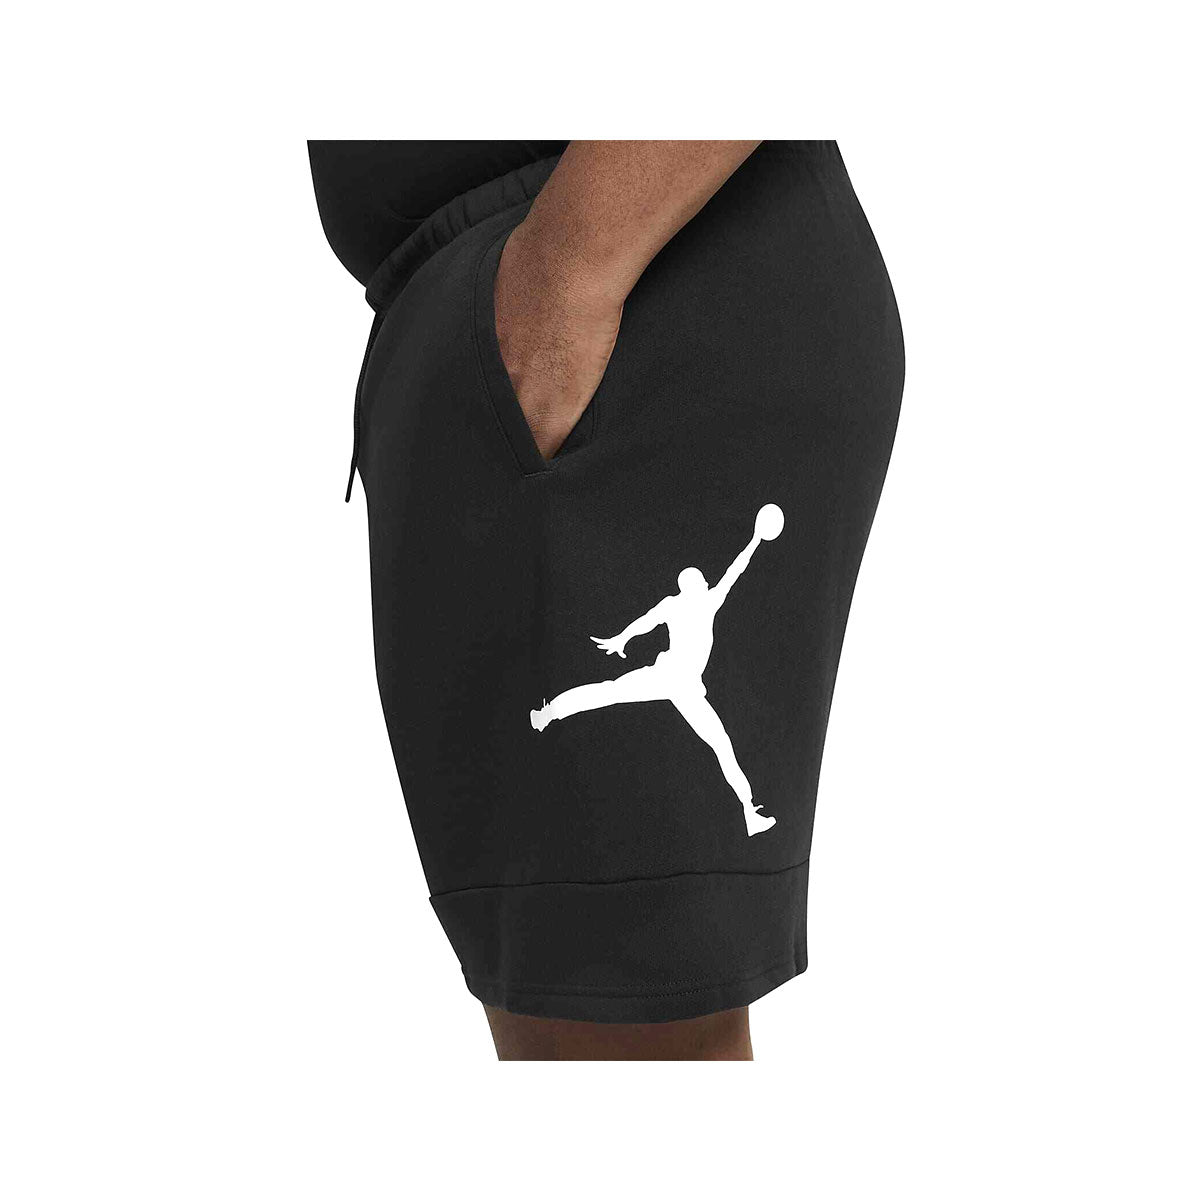 Jordan Jumpman Air Fleece Shorts